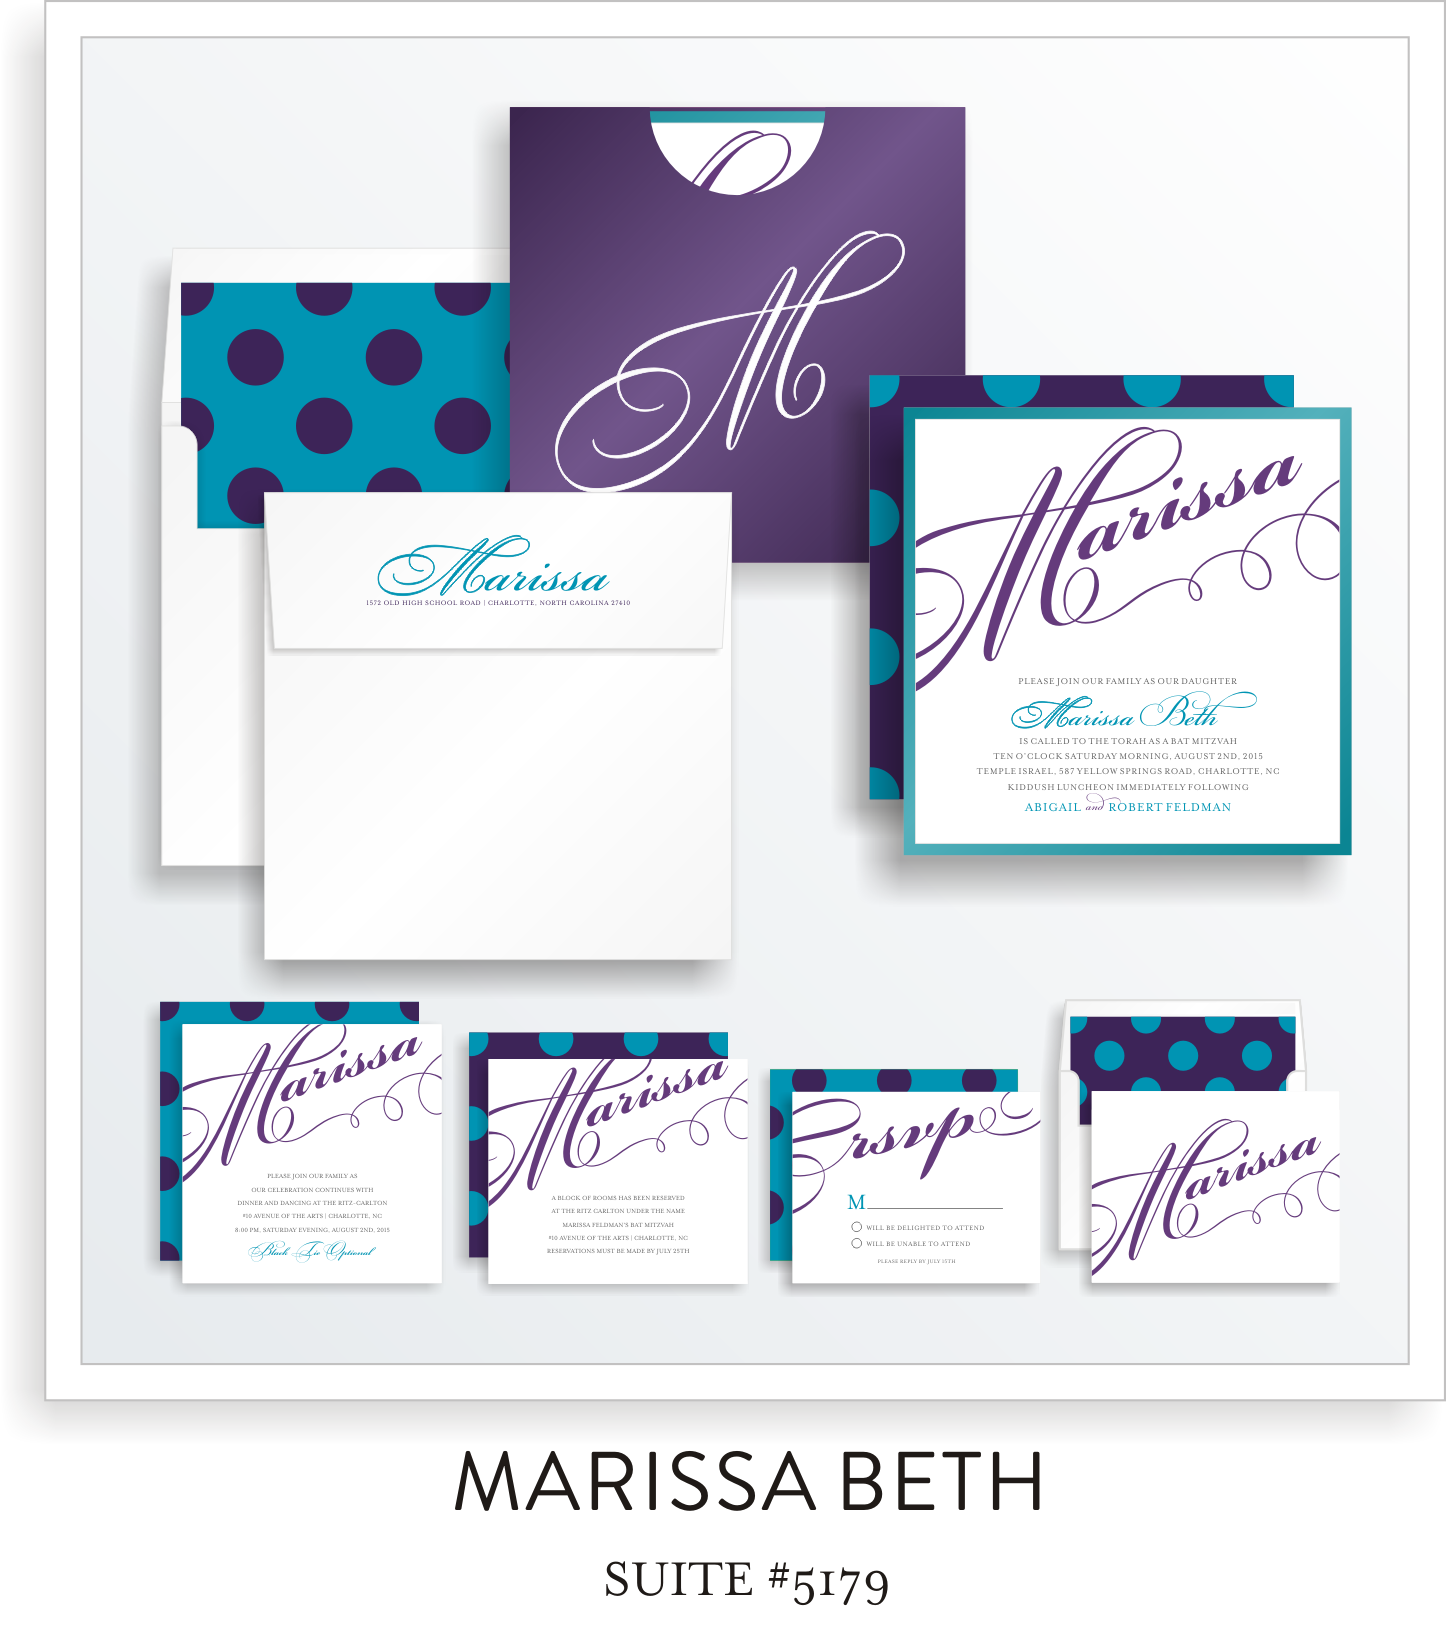 Bat Mitzvah Invitation Suite 5179 - Marissa Beth